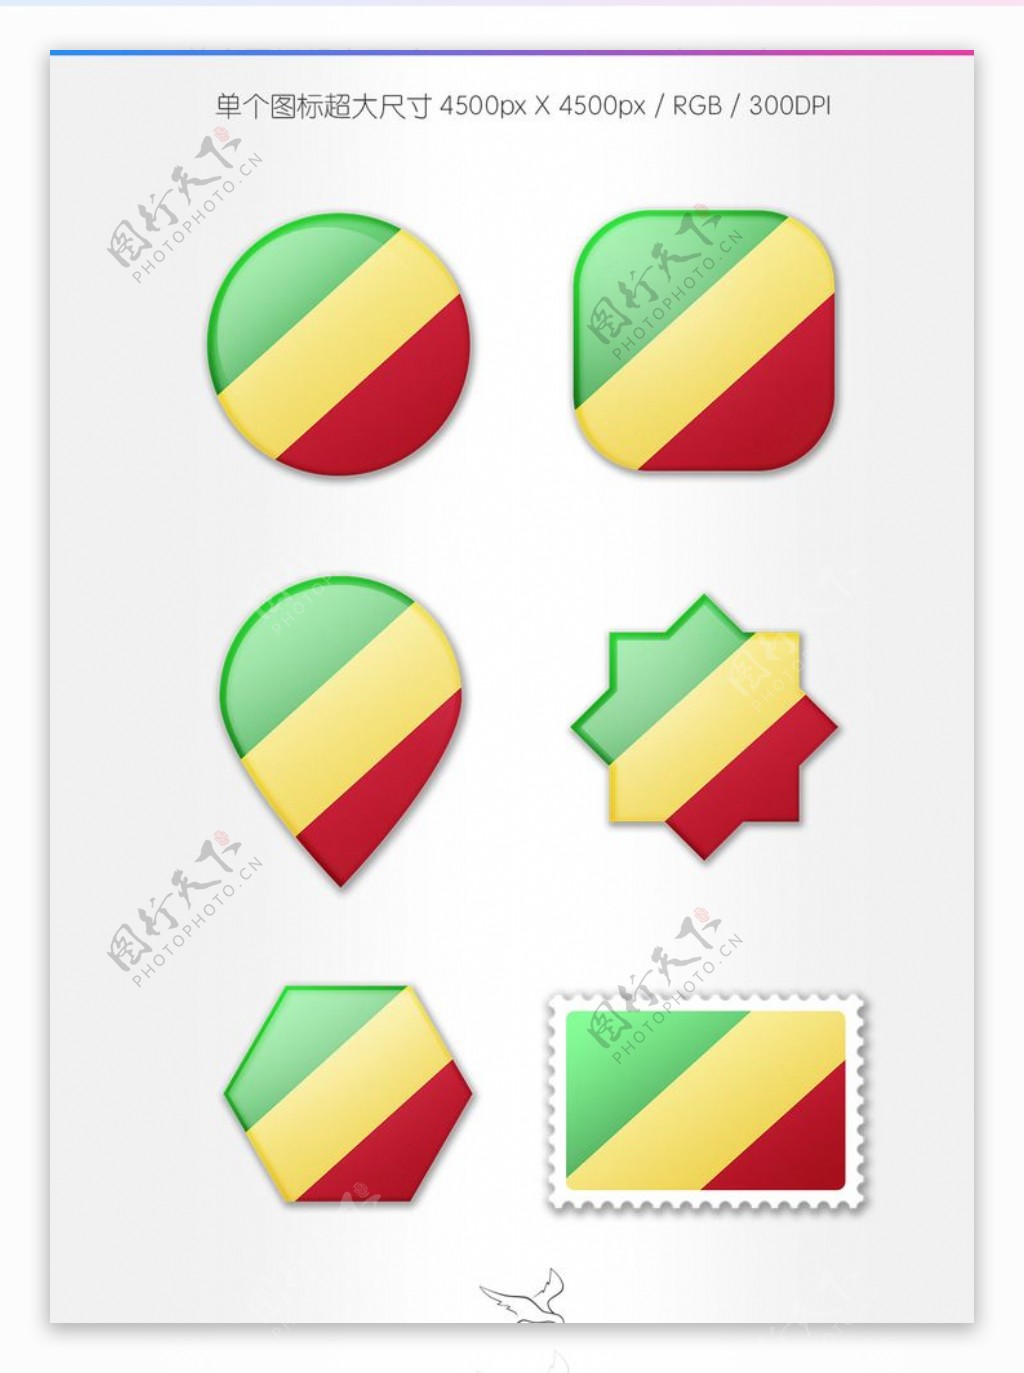 刚果共和国国旗图标